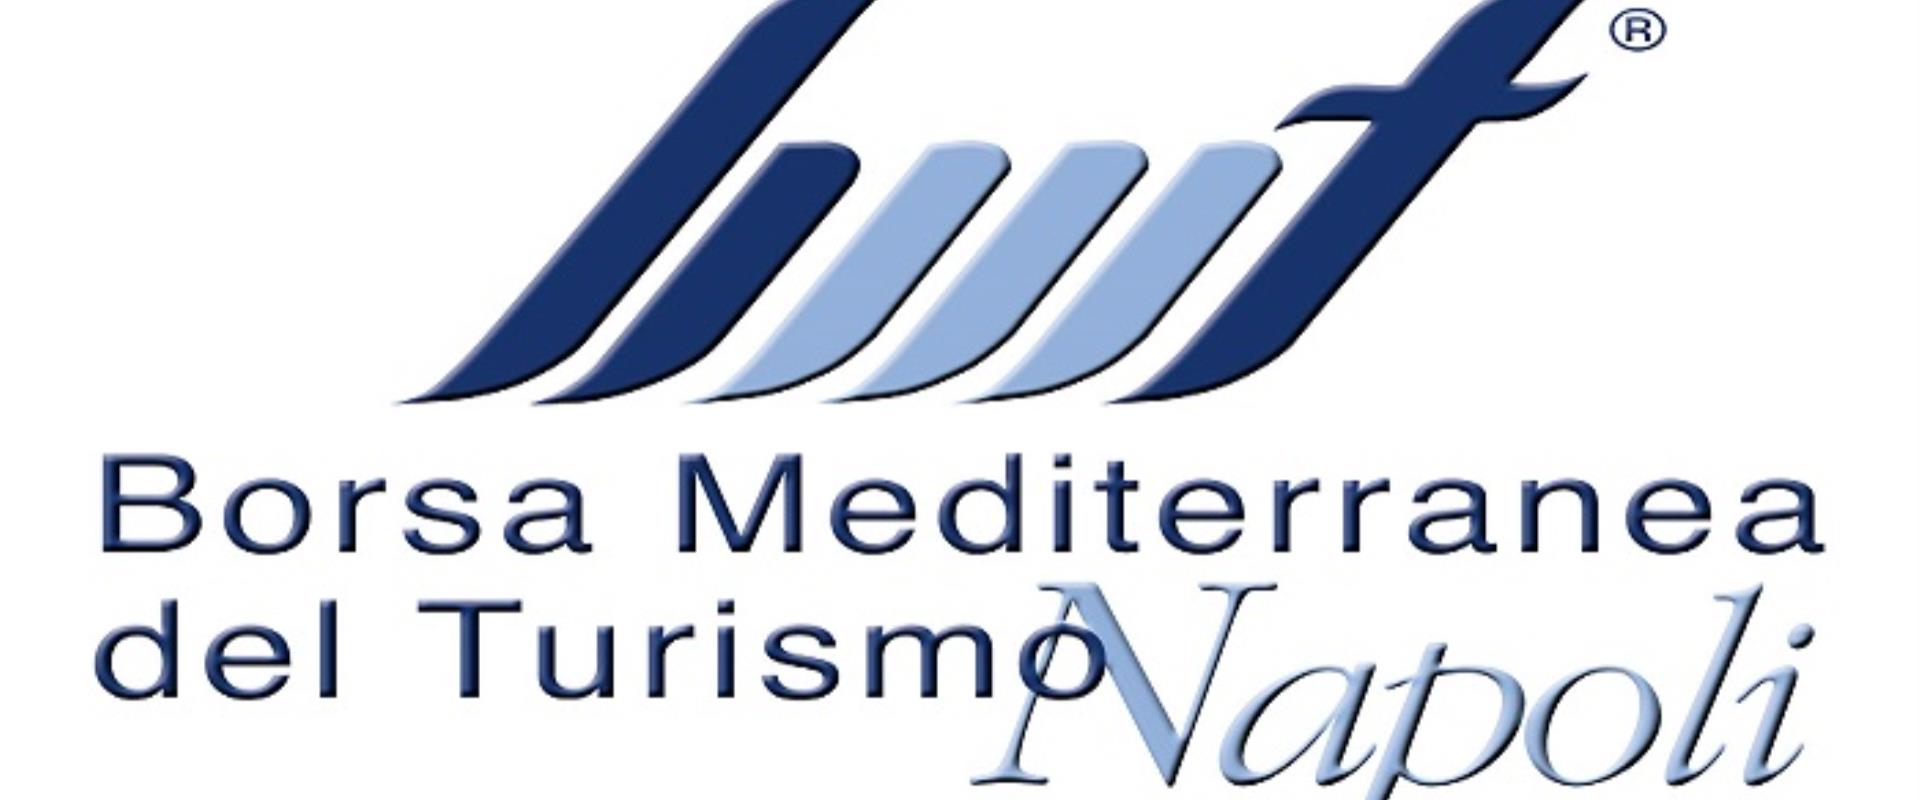 La BMT, Borsa Mediterranea del Turismo, è l’unica grande fiera turistica del Mediterraneo giunta alla ventesima edizione è un appuntamento irrinunciabile per tutto il mondo dei professionisti del settore.